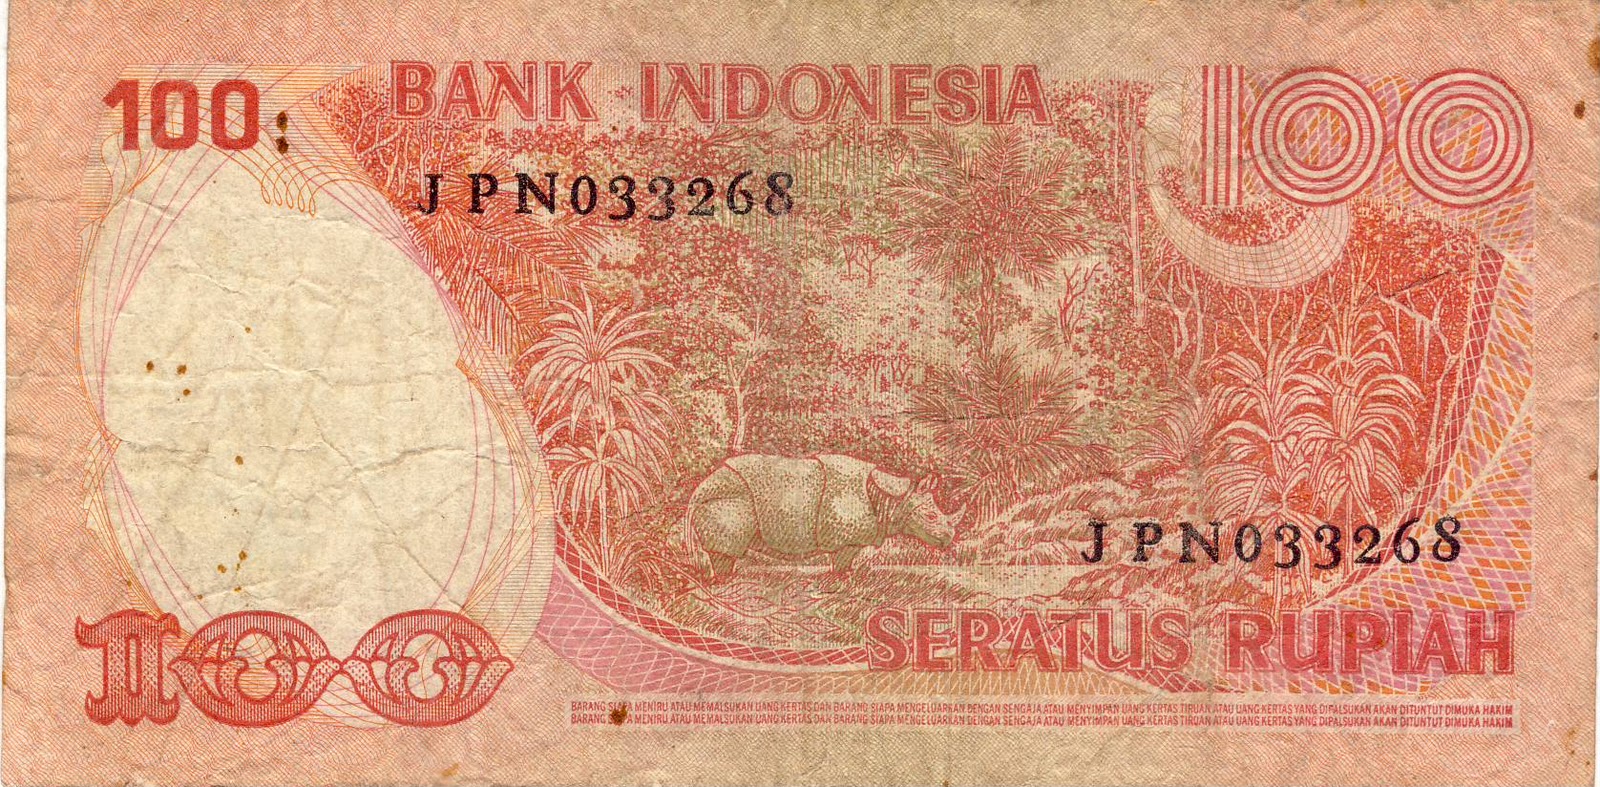 Uang Kertas Rp 100 Seratus Rupiah Indonesia Bergambar Badak Jawa